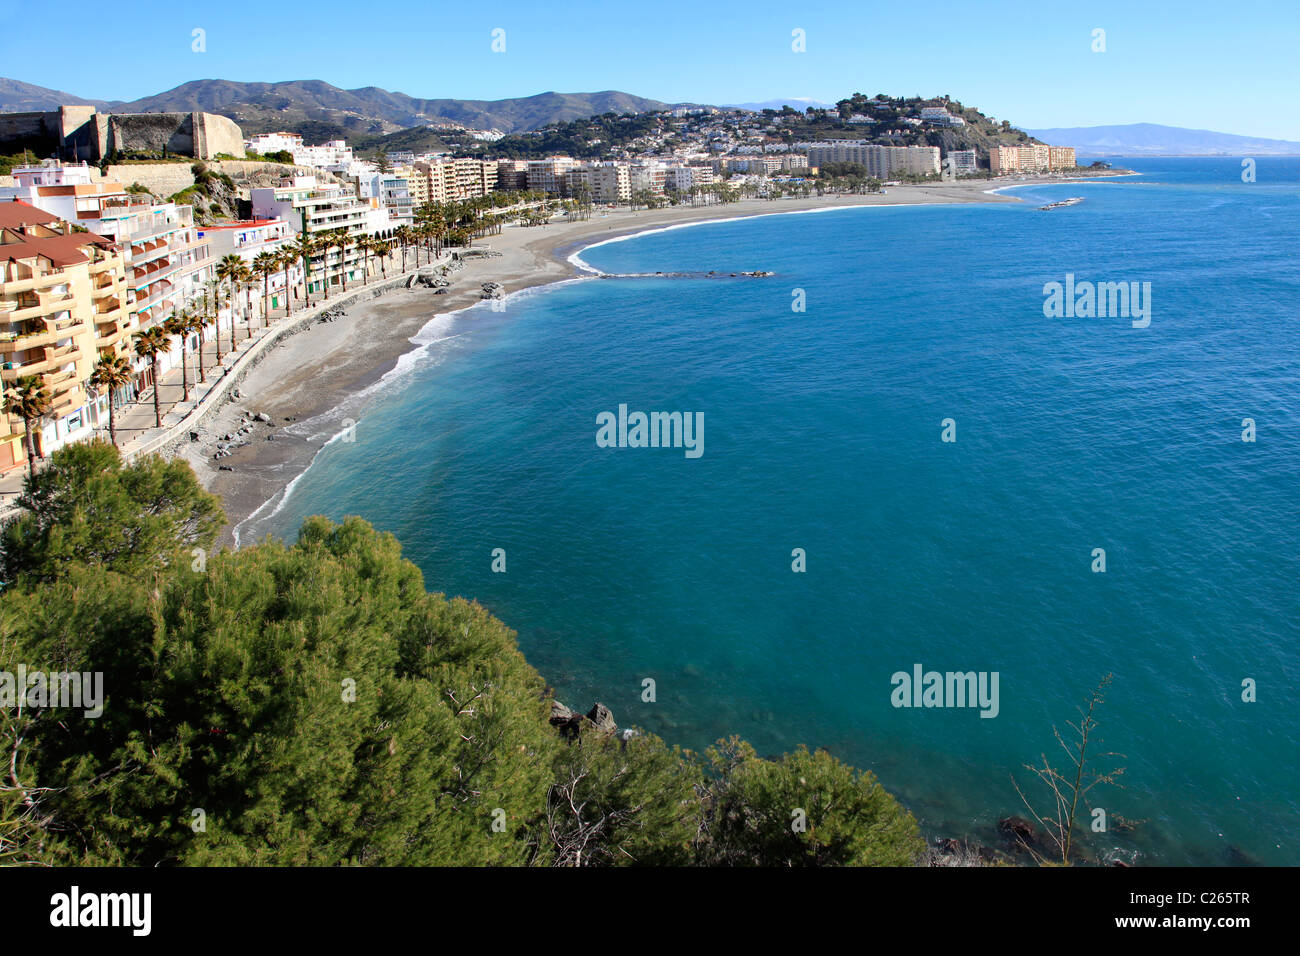 Vue sur les plages de la Caletilla, Puerta del Mar et le Pont de Pedra, Almuñecar, Granada, Costa del Sol, Andalousie, Espagne Banque D'Images